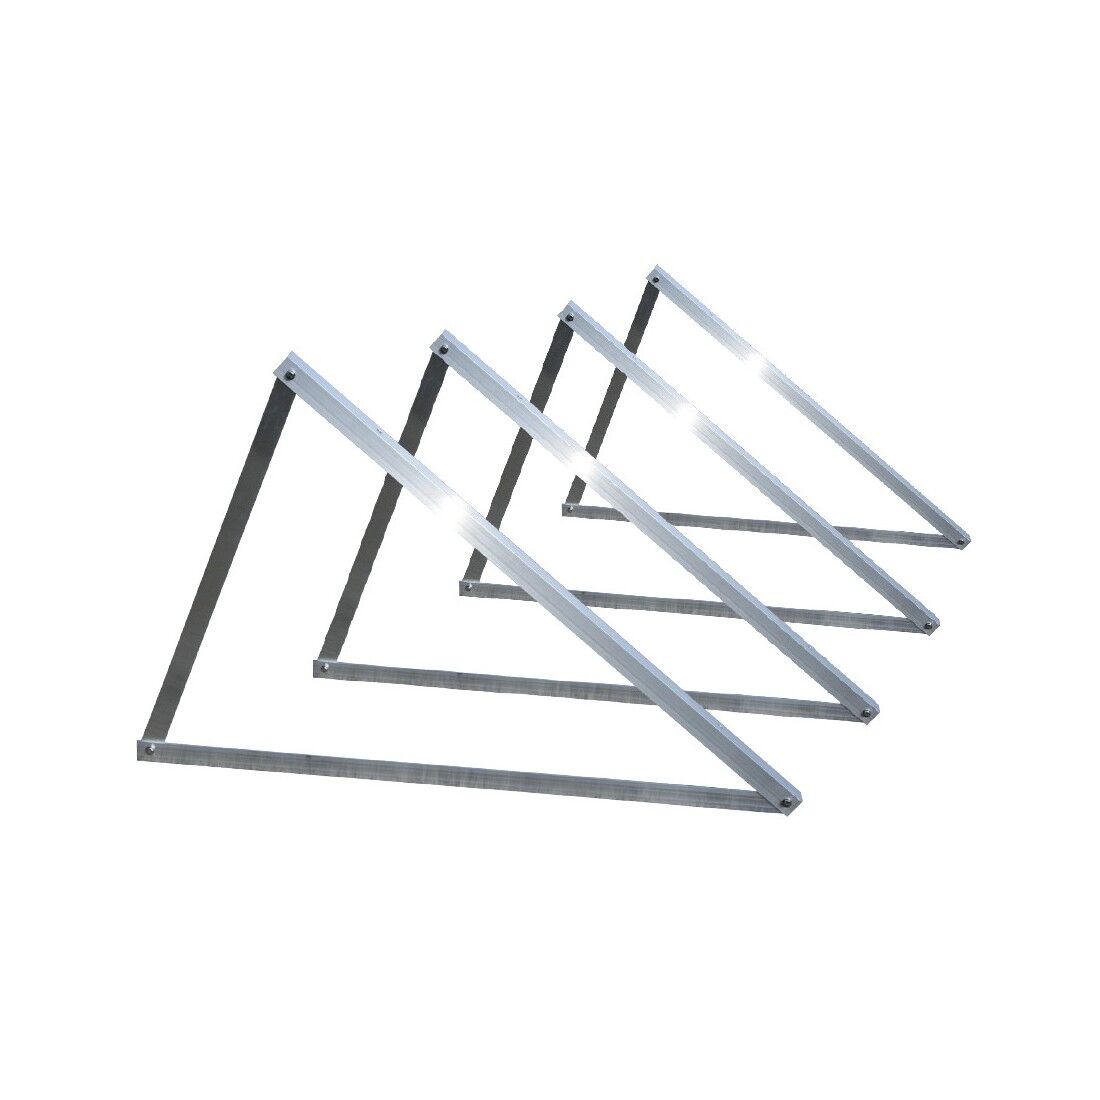 Tecnosystemi Triangolo HTF per fissaggio pannelli su tetto piano con inclinazione da 20° a 40°